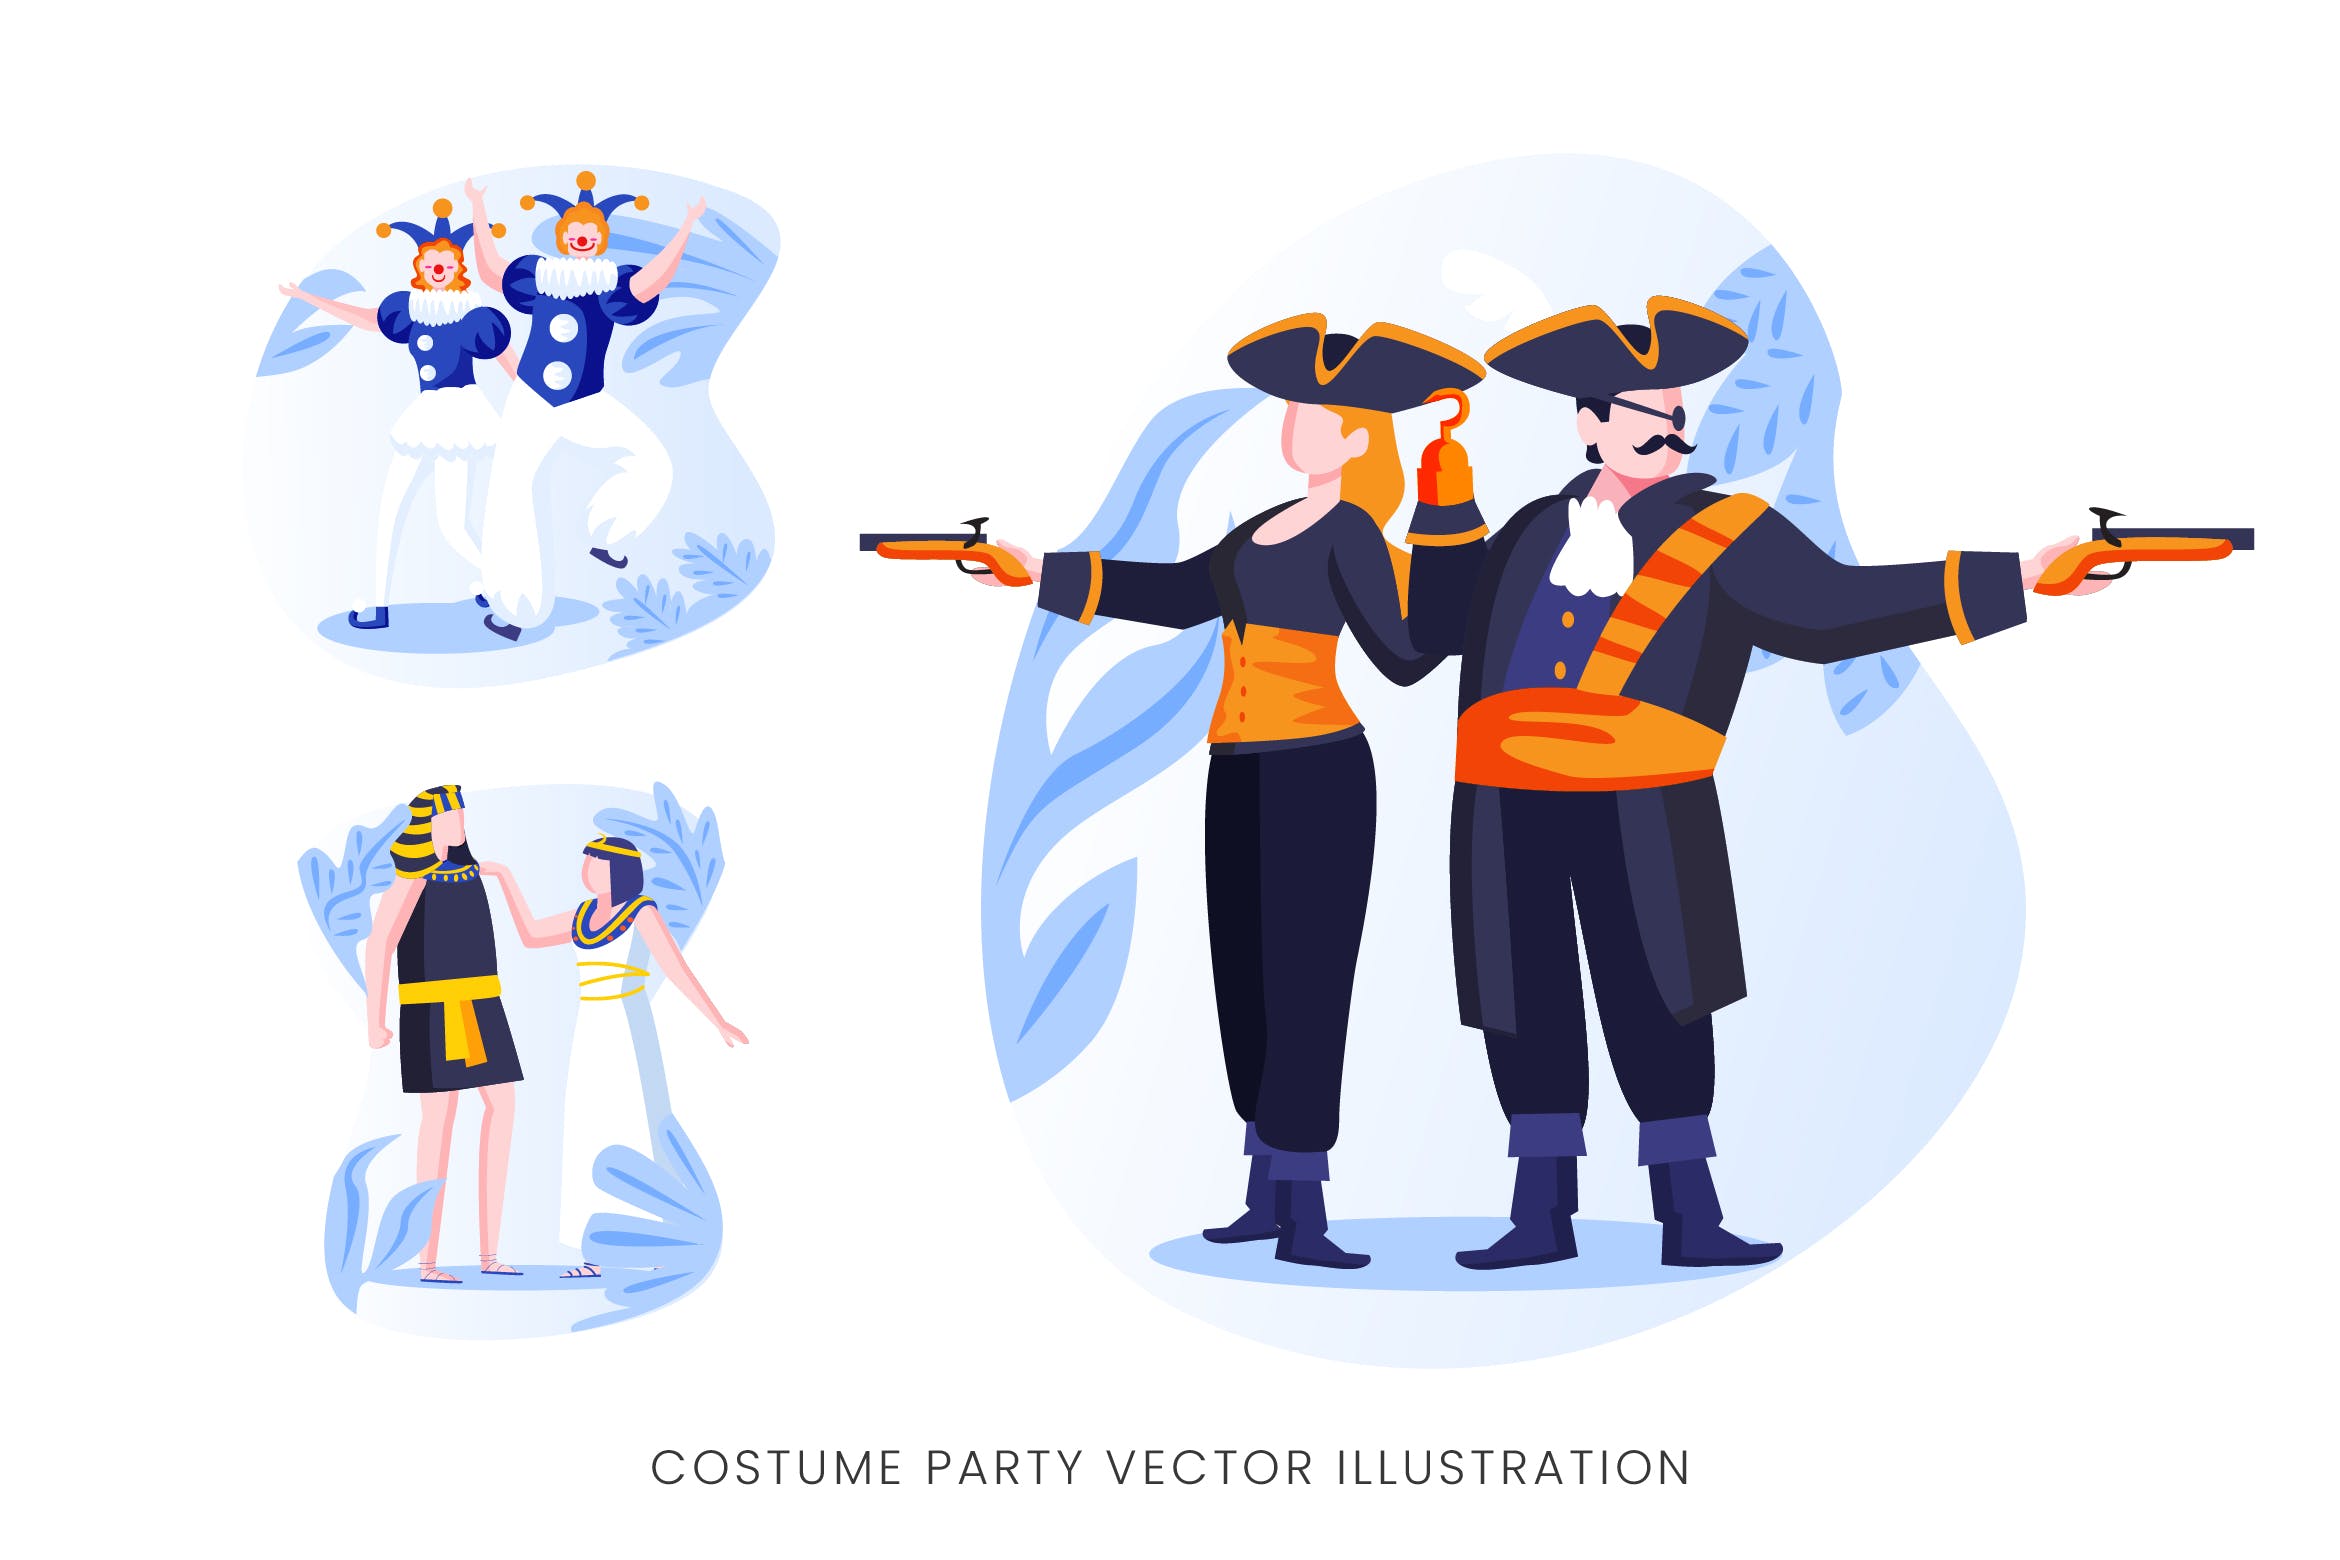 服装Cosplay派对人物形象矢量手绘蚂蚁素材精选设计素材 Costume Party Vector Character Set插图